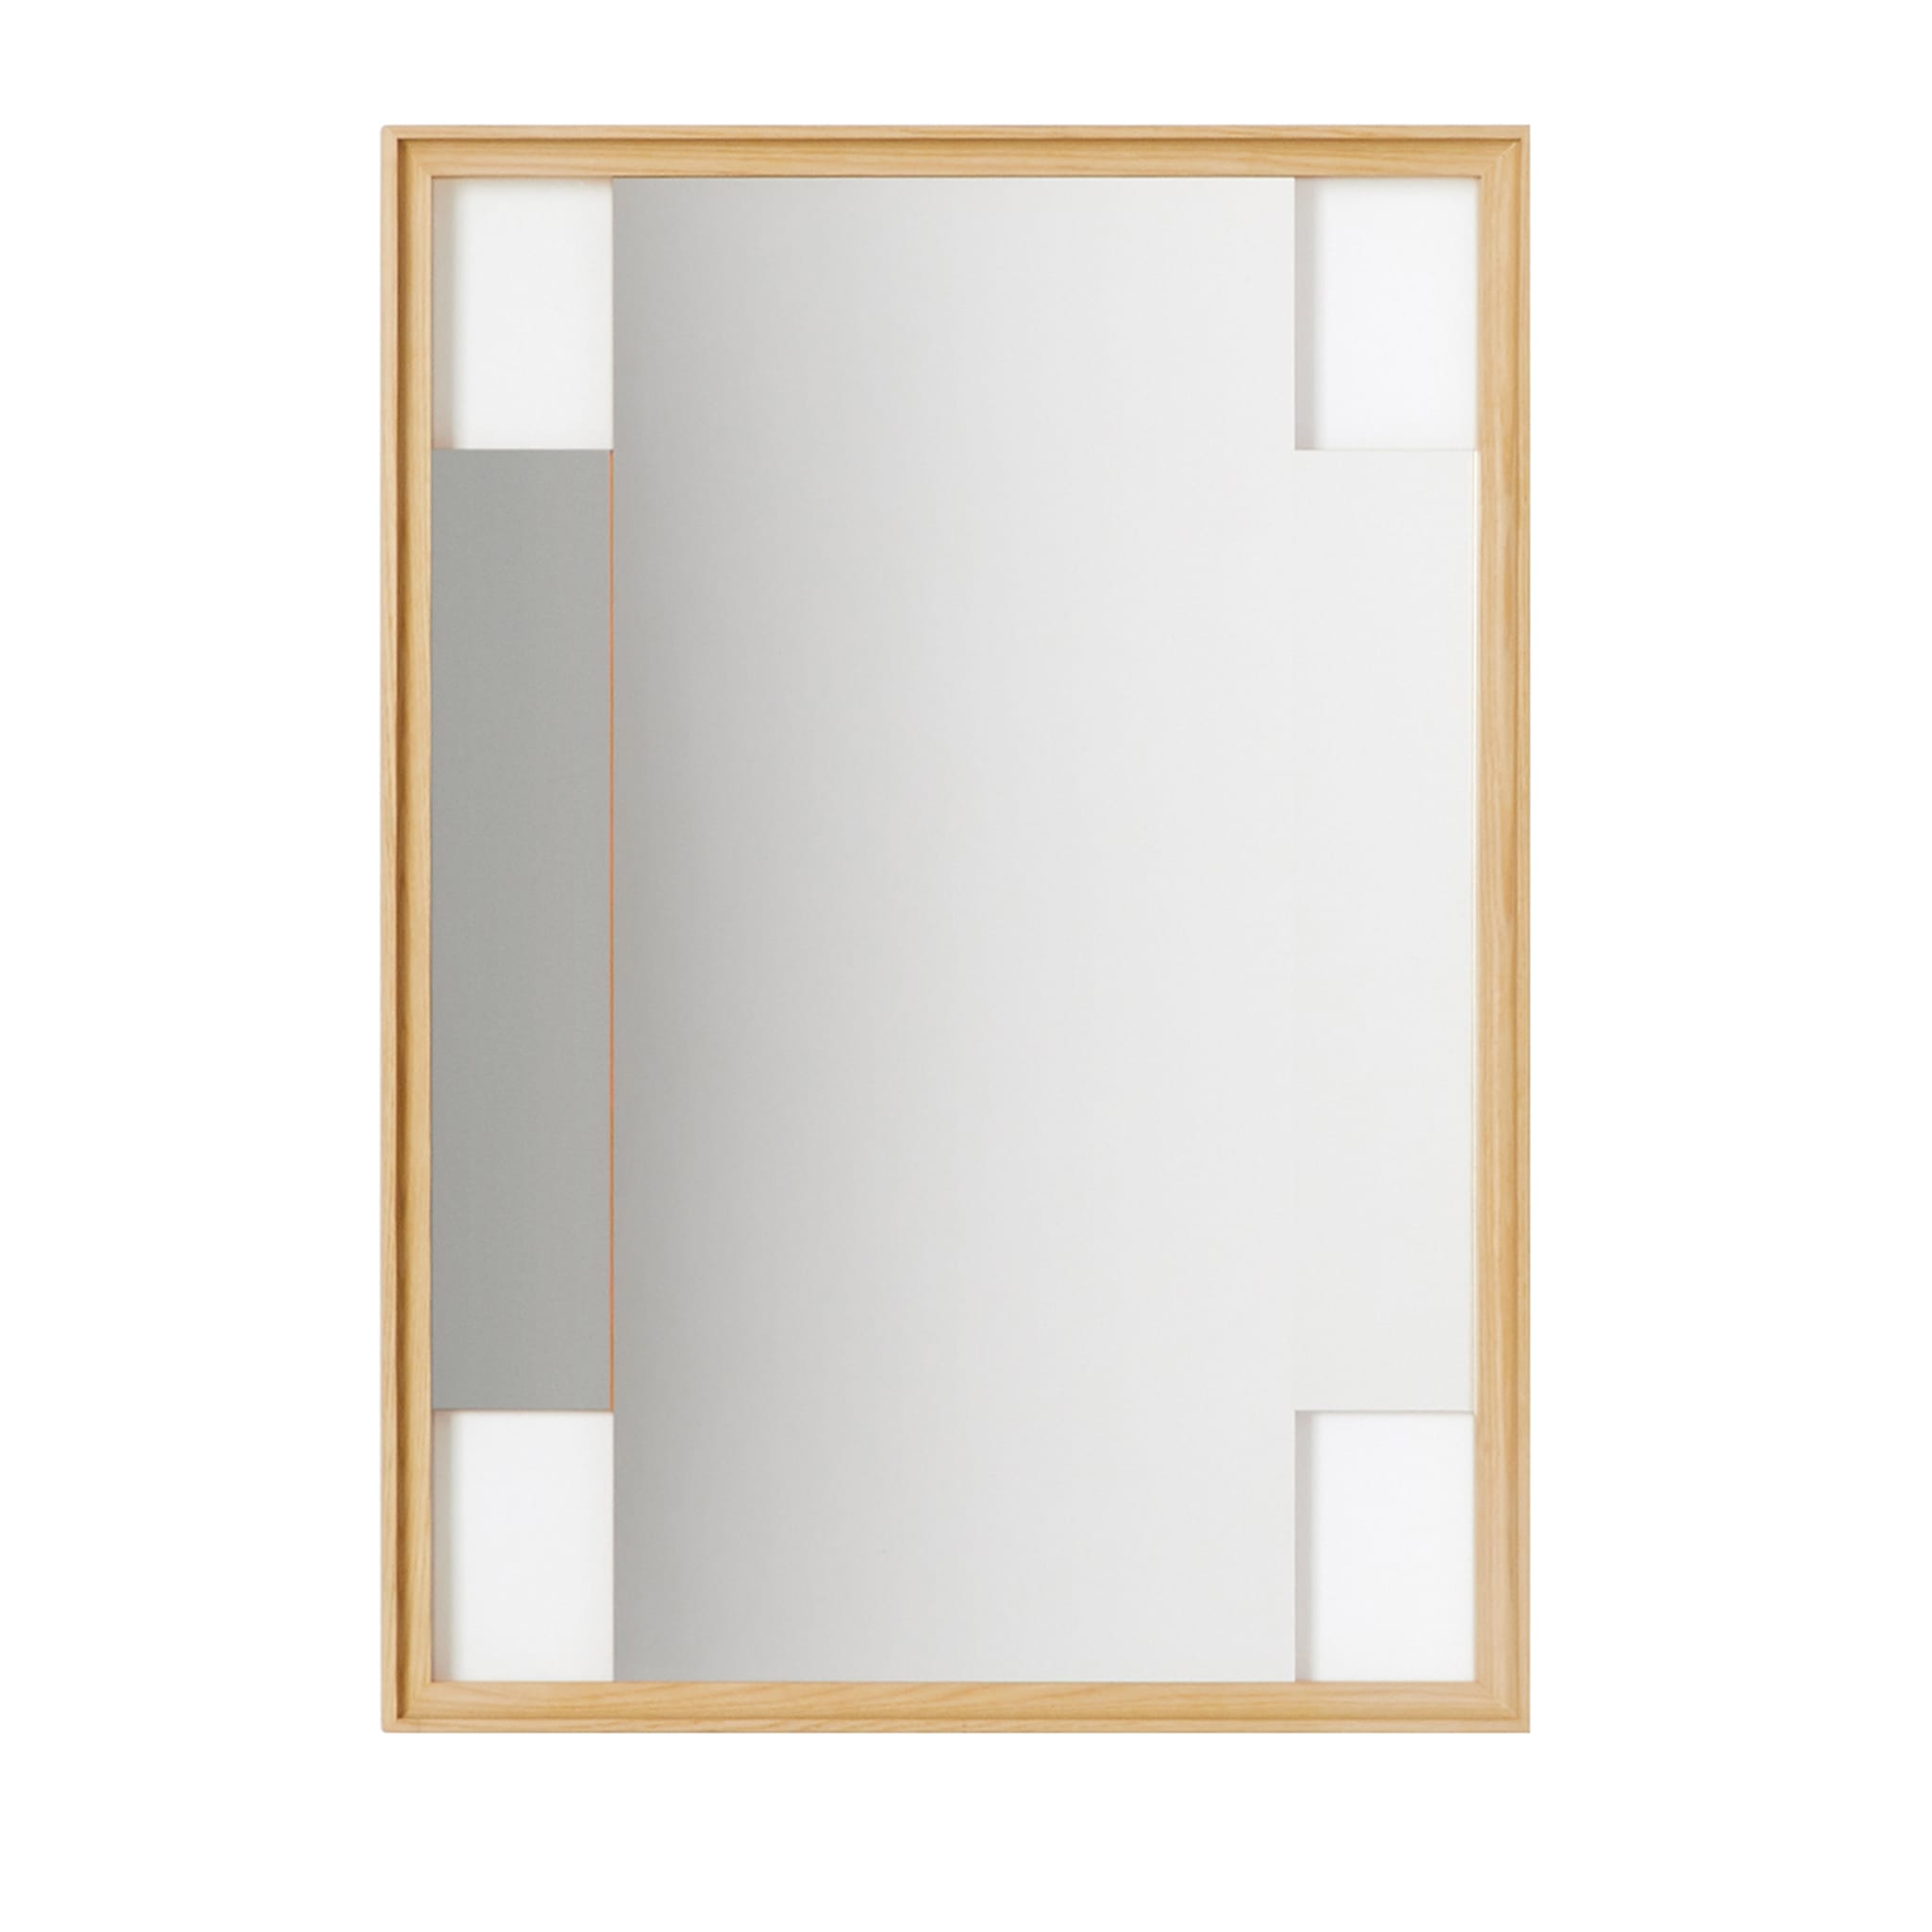 Délai 2 CROSSING PATHS Miroir rectangulaire par Ron Gilad #2 - Vue principale